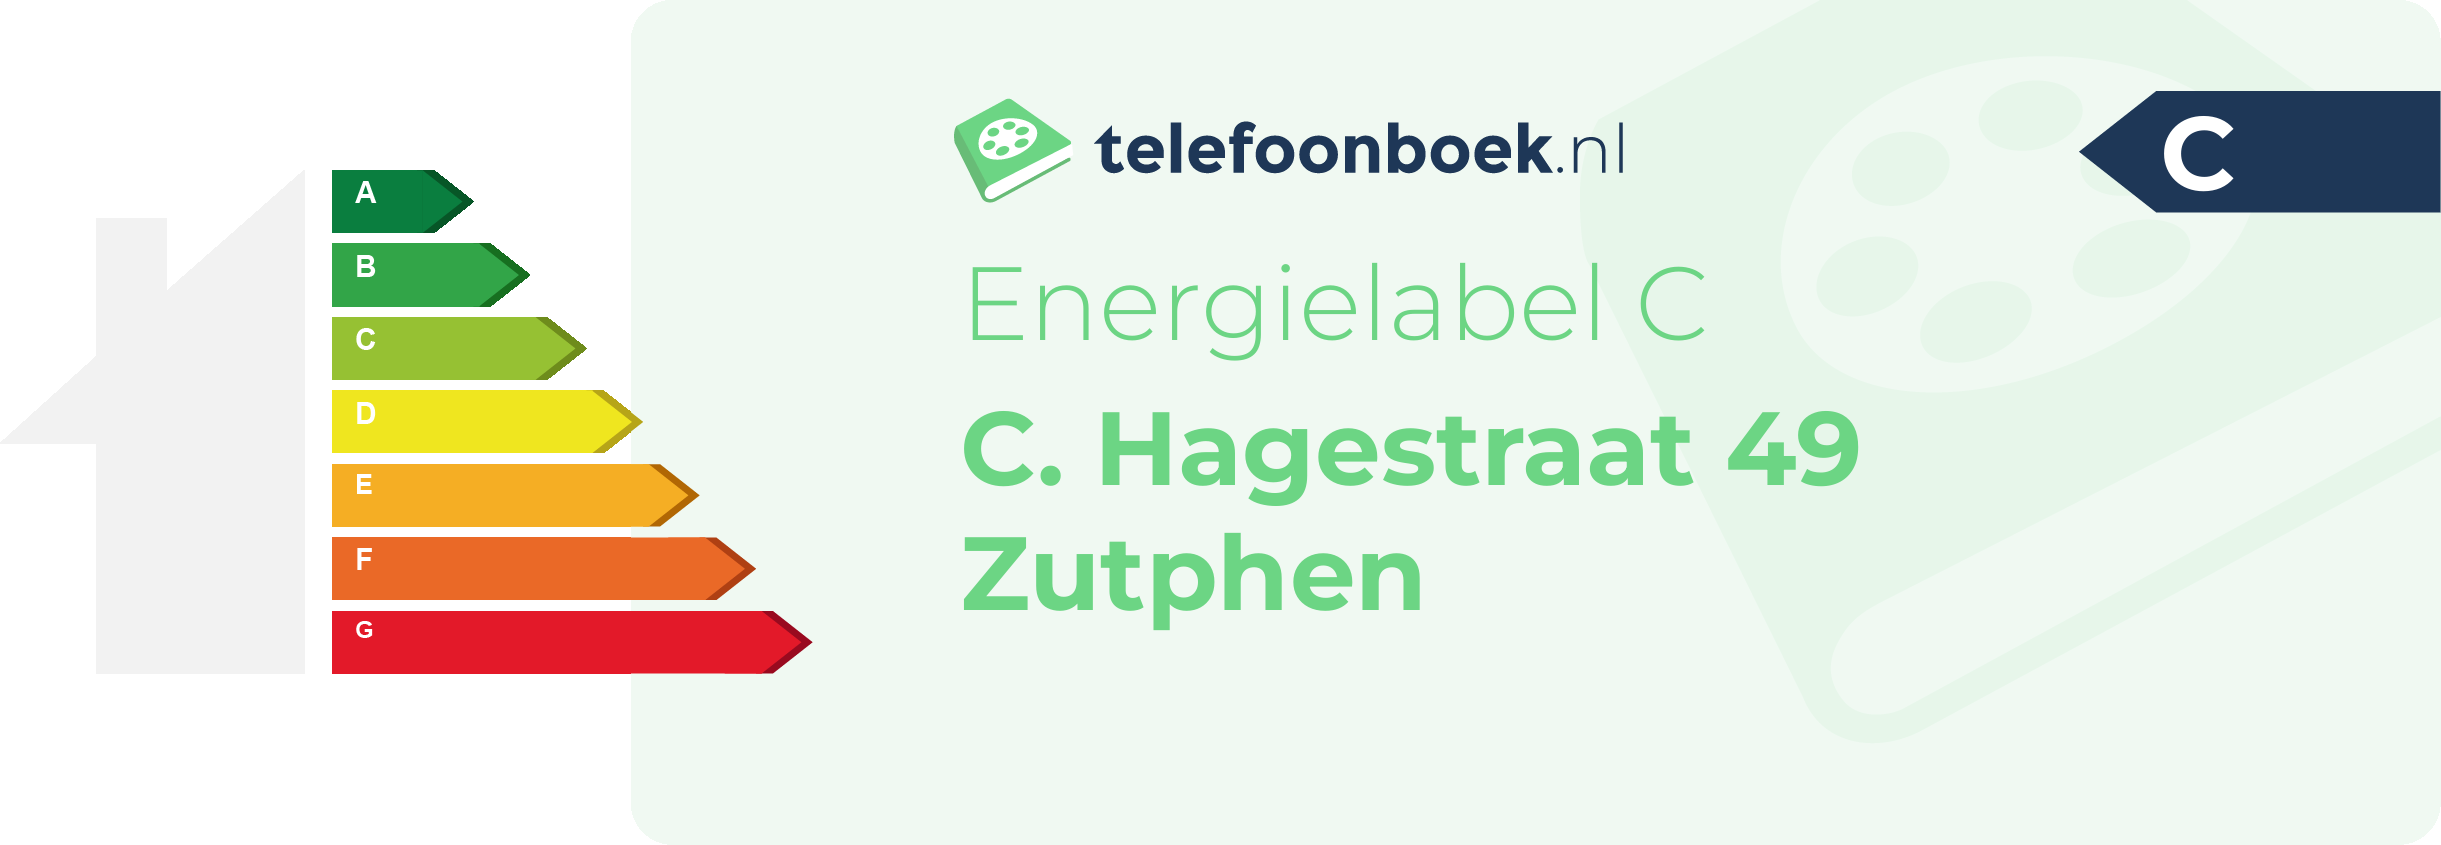 Energielabel C. Hagestraat 49 Zutphen